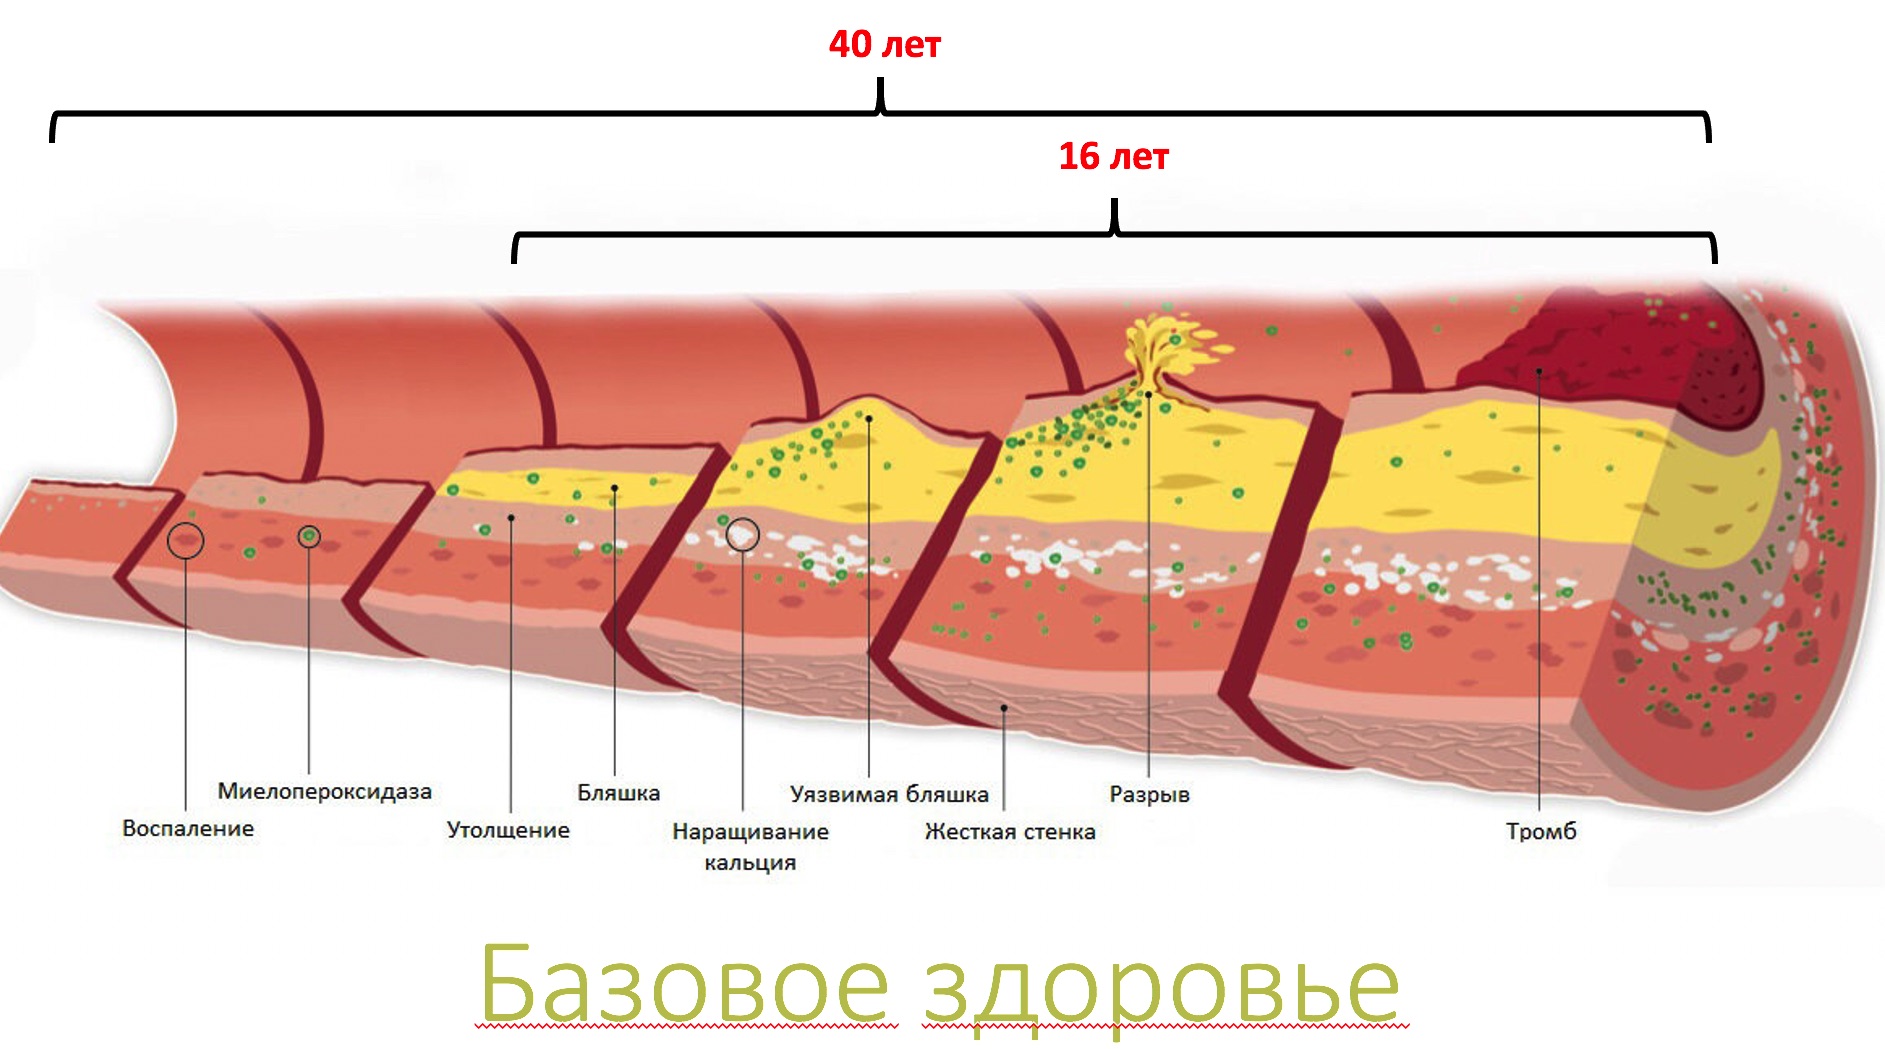 Артерий атеросклероз латынь. Ишемическая стадия атеросклероза. Атеросклероз коронарных артерий стадии и степени. Атеросклероз венечных артерий стадии и степень. Атеросклероз венечных артерий сердца.